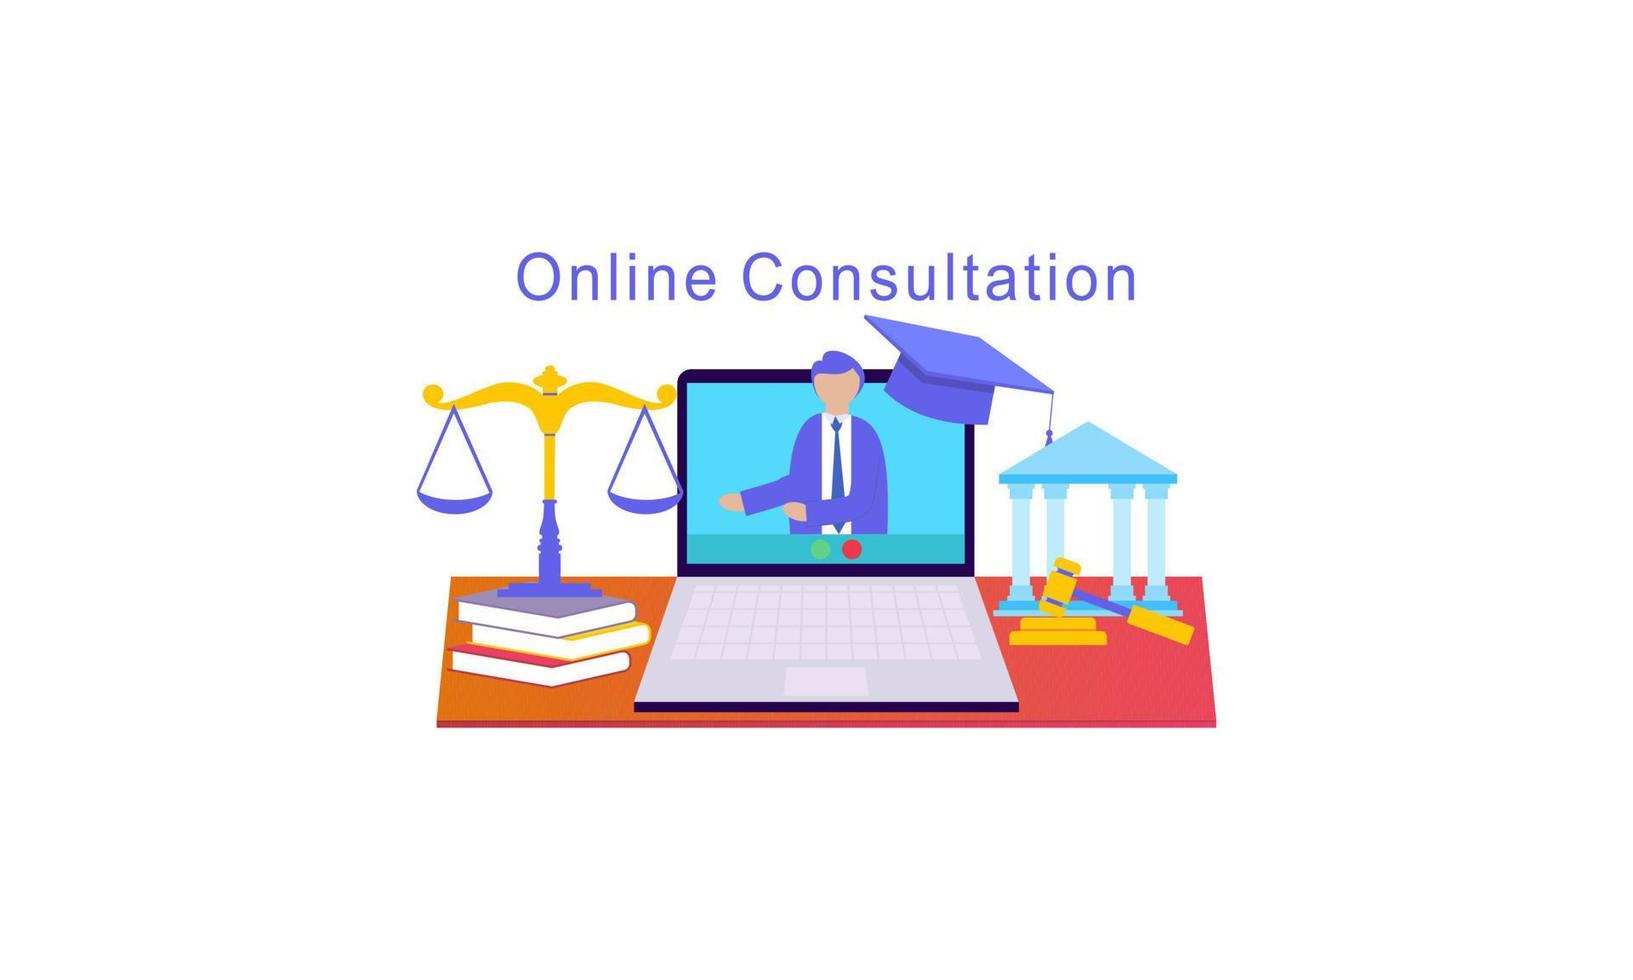 juridisch advies online service, advocaat website vectorillustratie vector